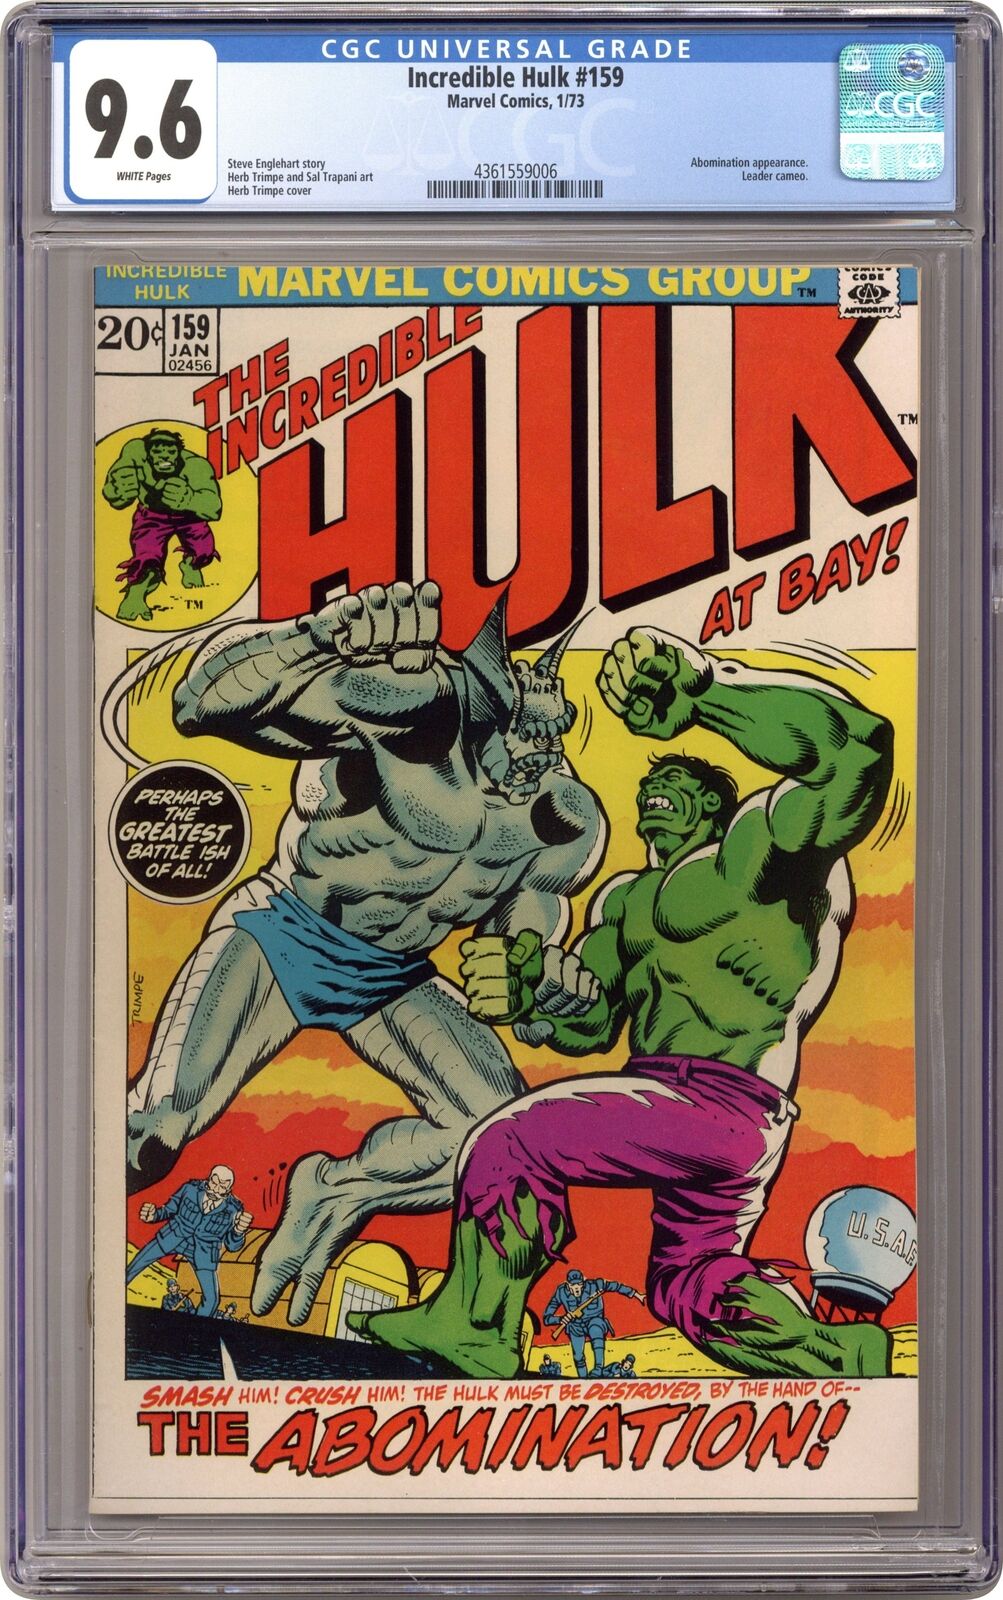 Incredible Hulk #159 CGC 9.6 1973 4361559006